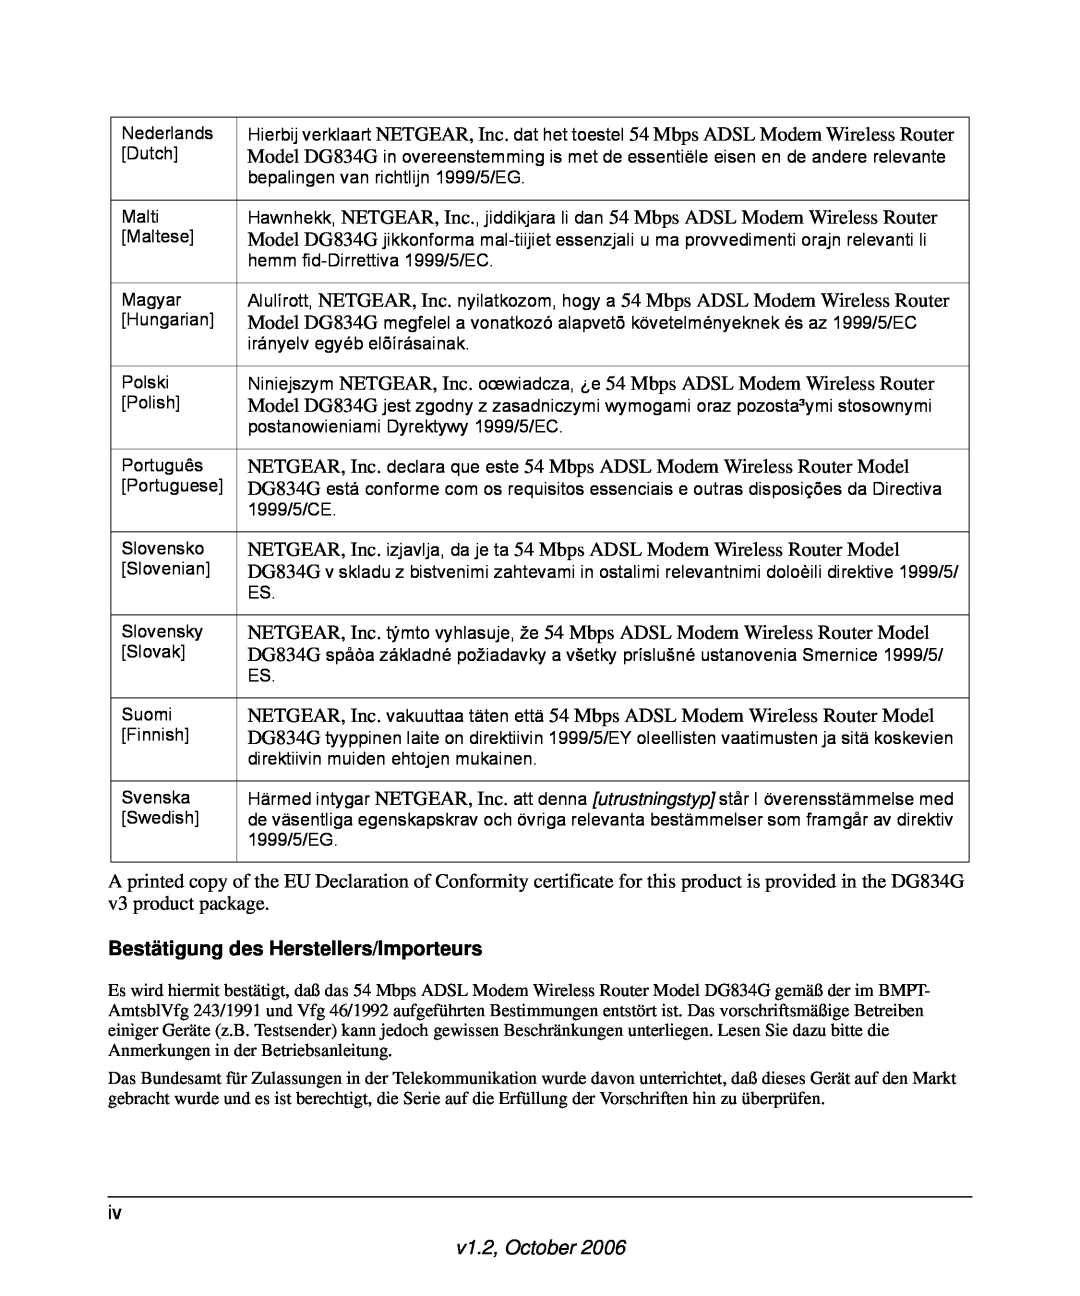 NETGEAR DG834G manual Bestätigung des Herstellers/Importeurs, v1.2, October 